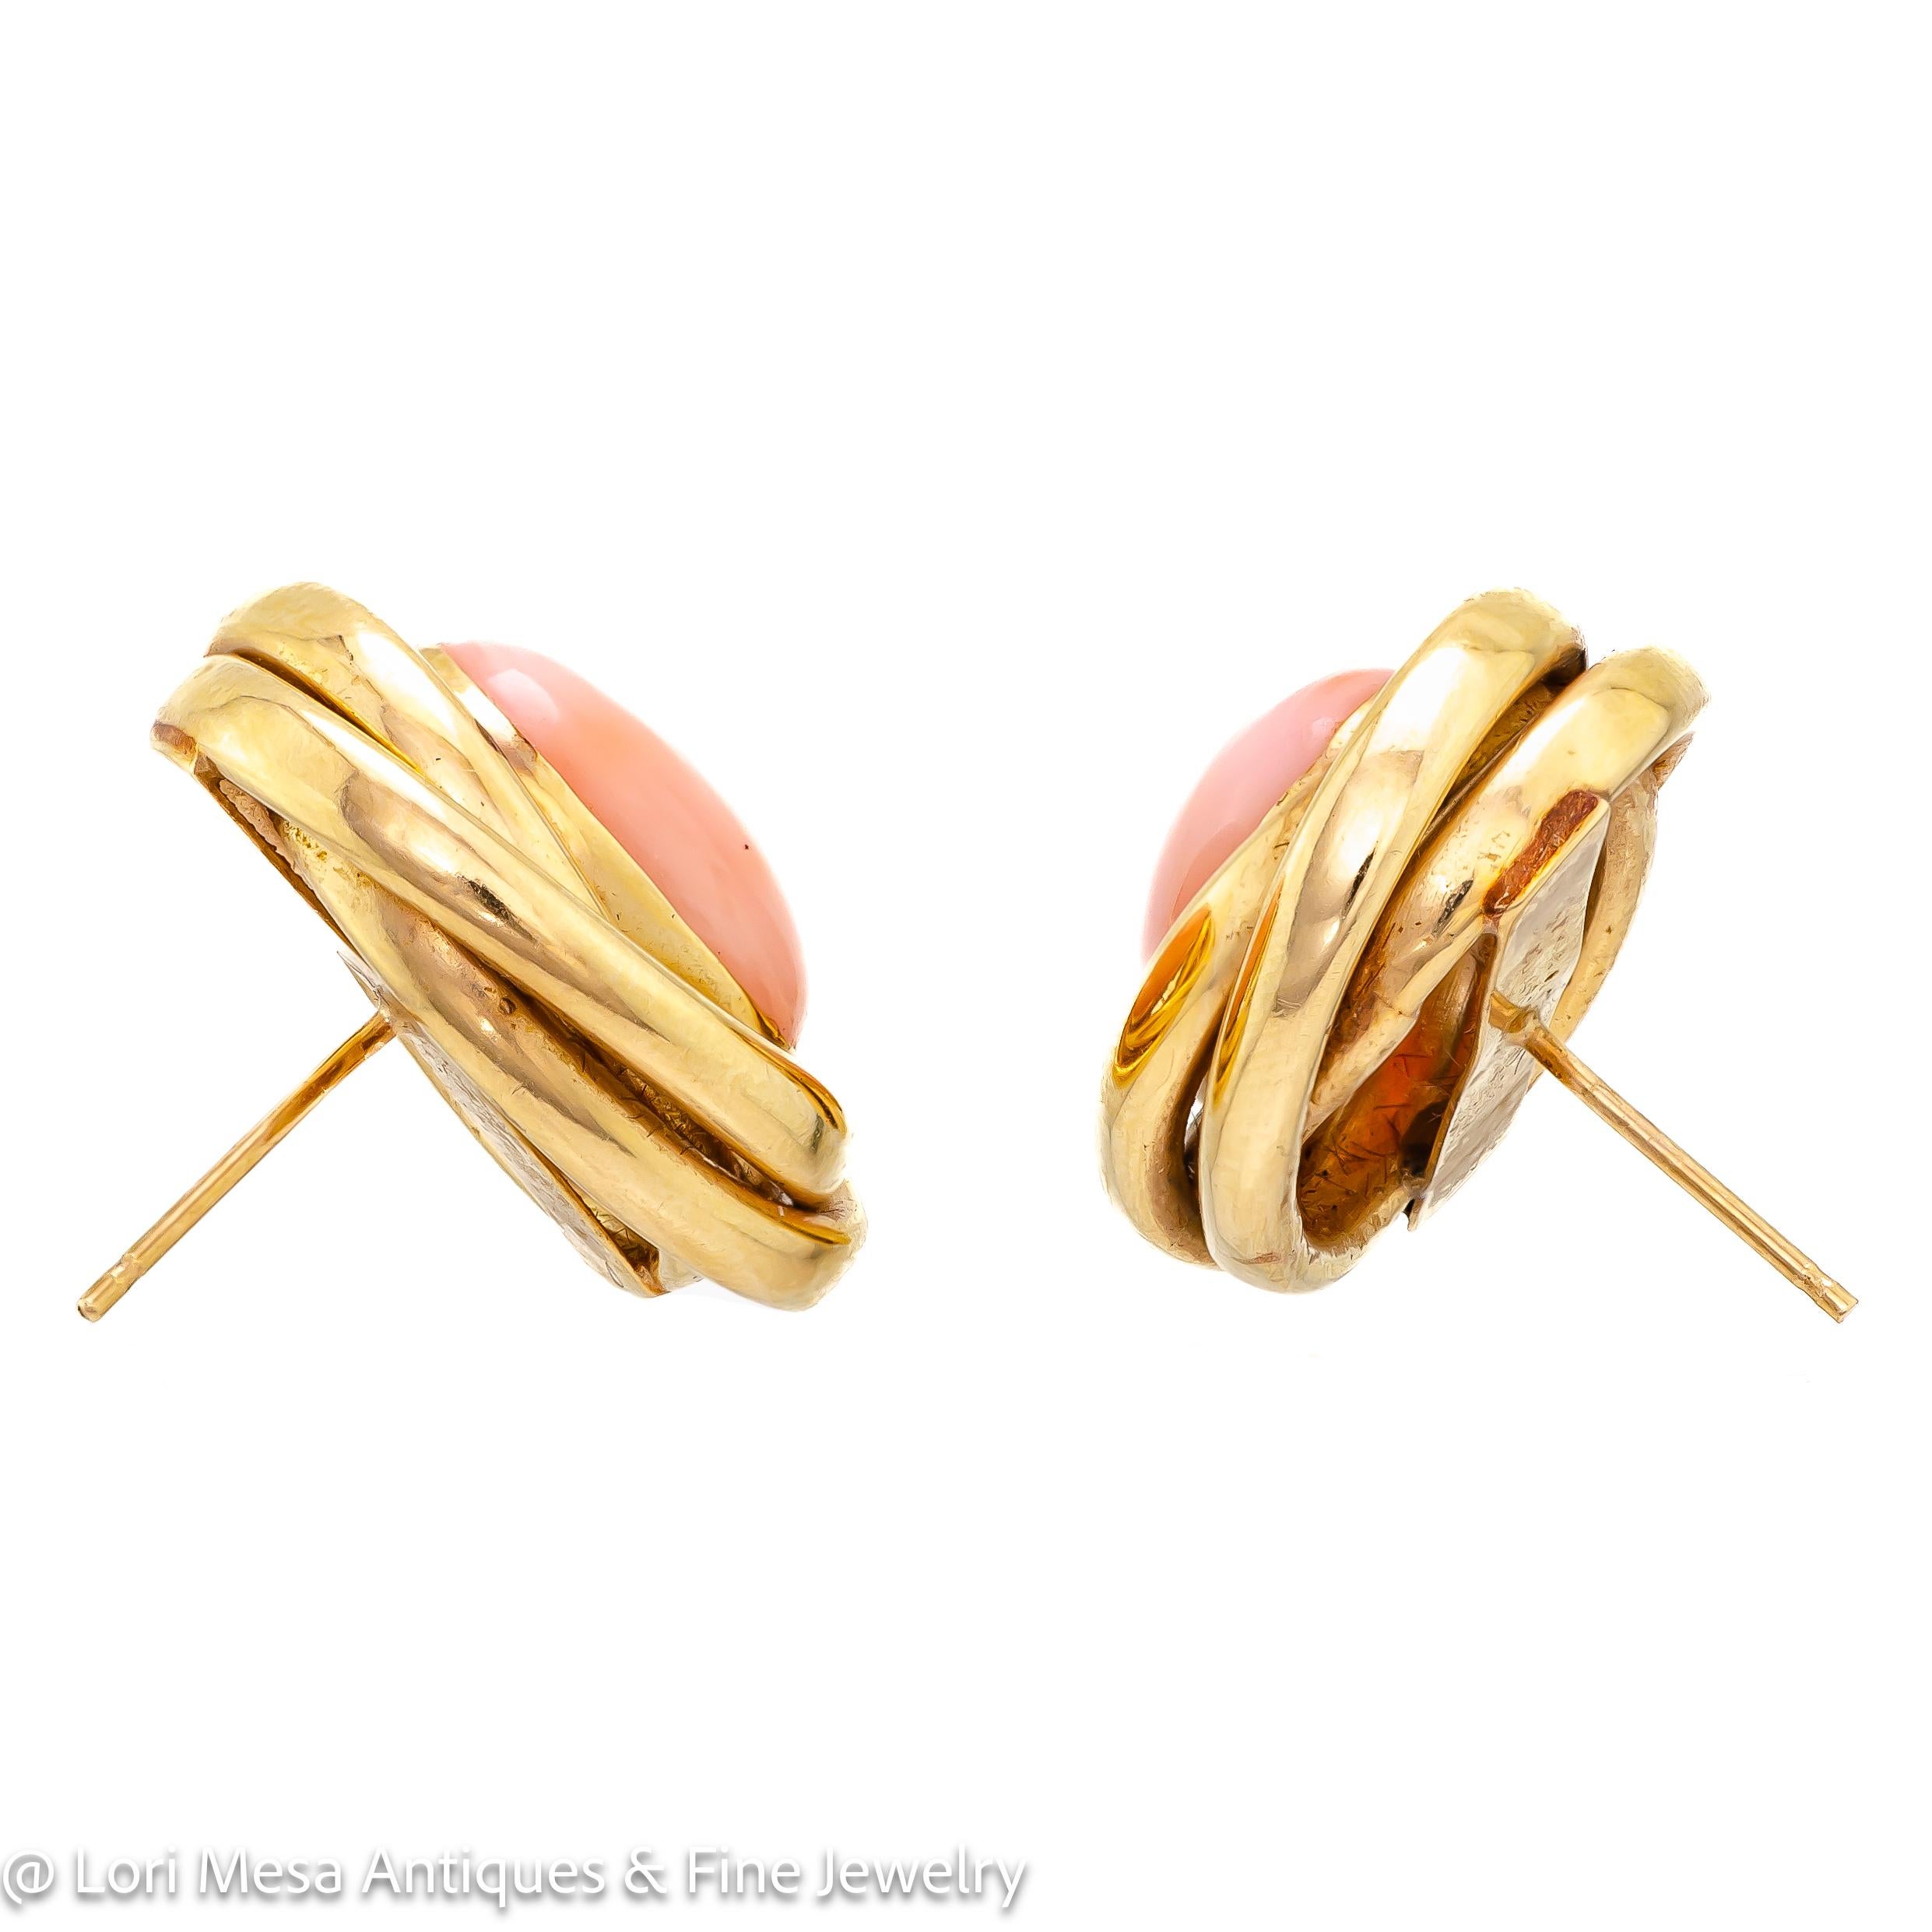 Ravissantes boucles d'oreilles vintage des années 1960 en corail et or jaune 14kt, serties au centre de cabochons ovales en corail rosé dans une monture de boucle d'oreille tressée en or jaune 14kt.  